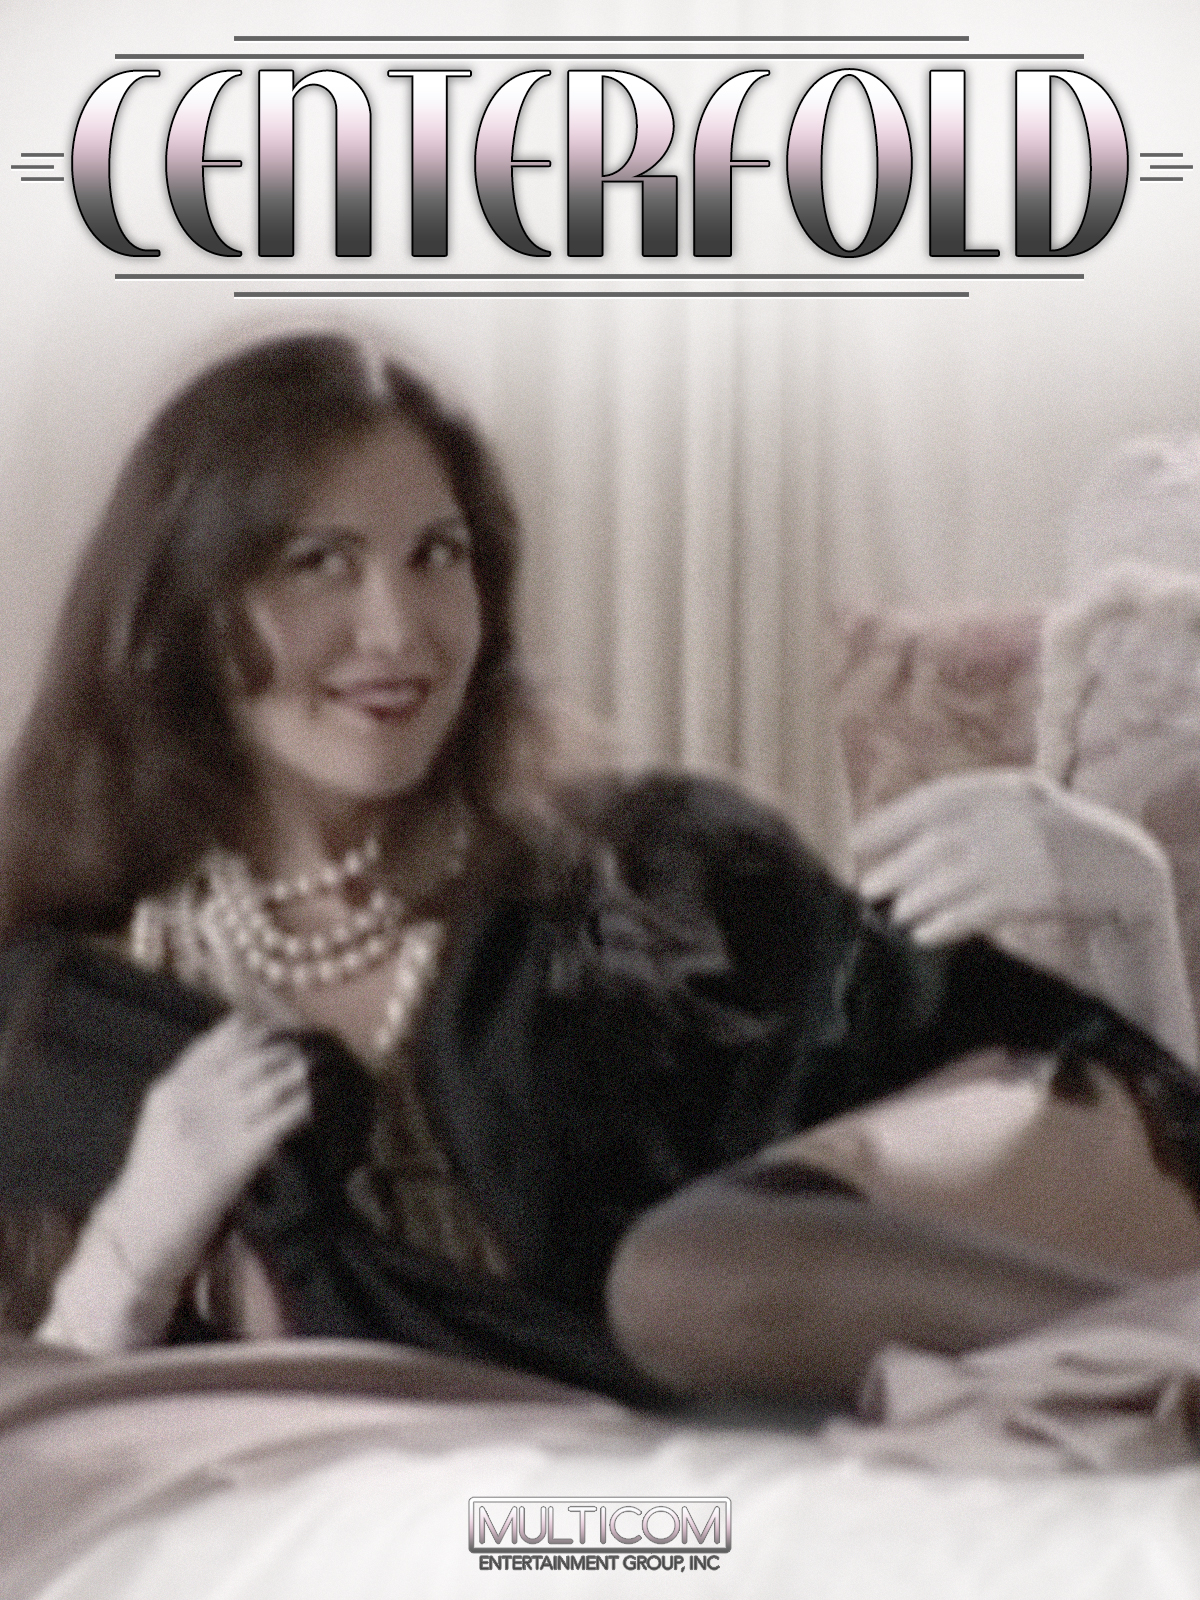 Centerfold (1996) starring Cheryl Bartel on DVD on DVD